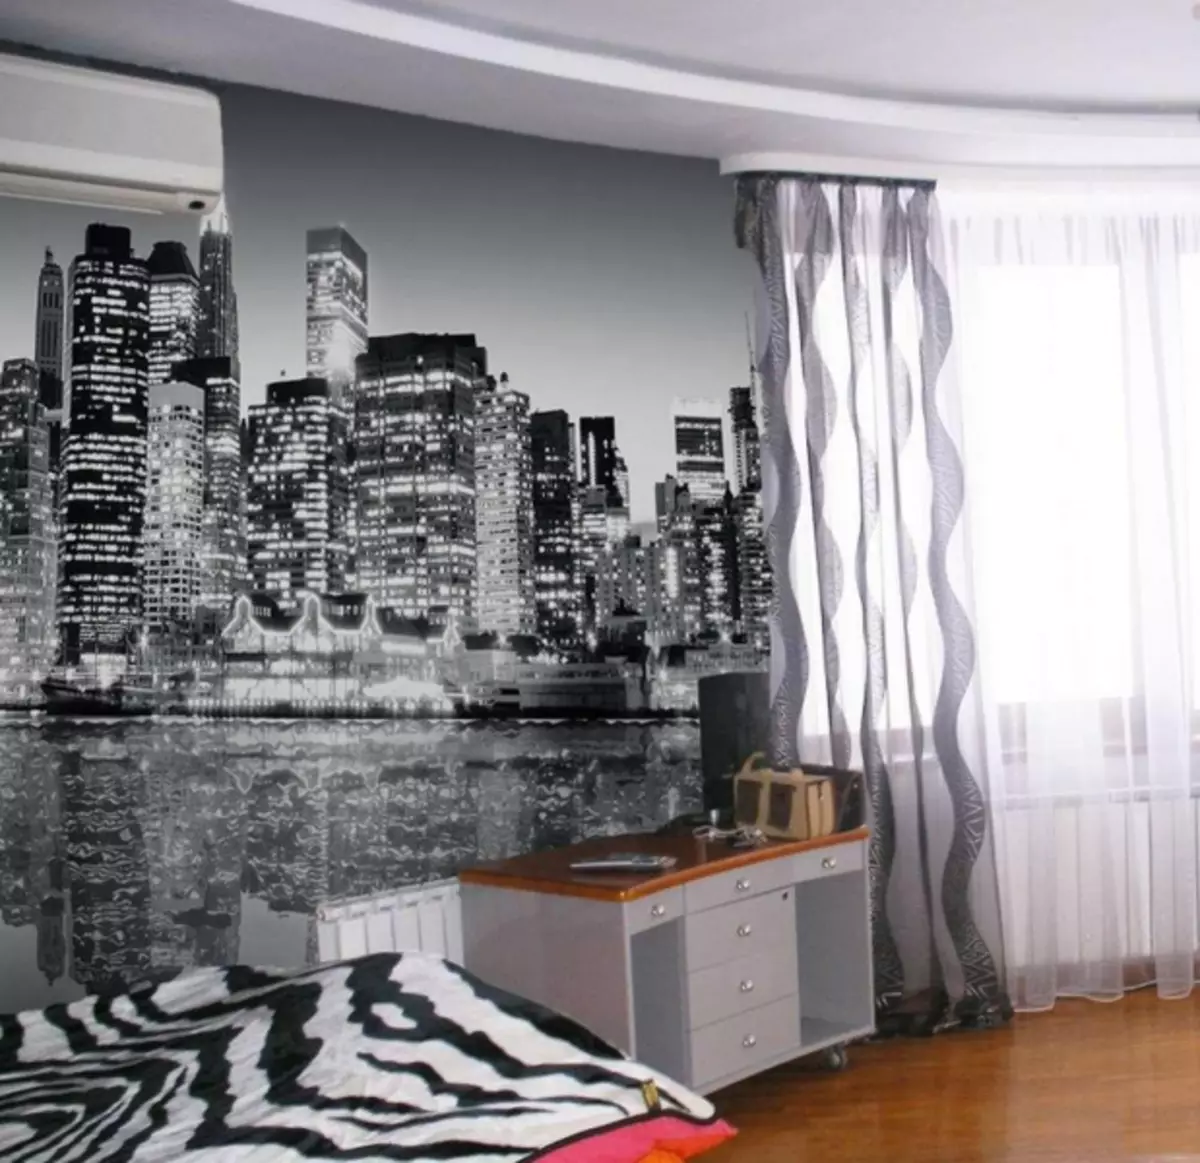 Wallpaper Cidades na parede: Foto no interior, inverno Paris, Londres com noite, preto e branco, Veneza, vista, imagem de Nova York, vídeo